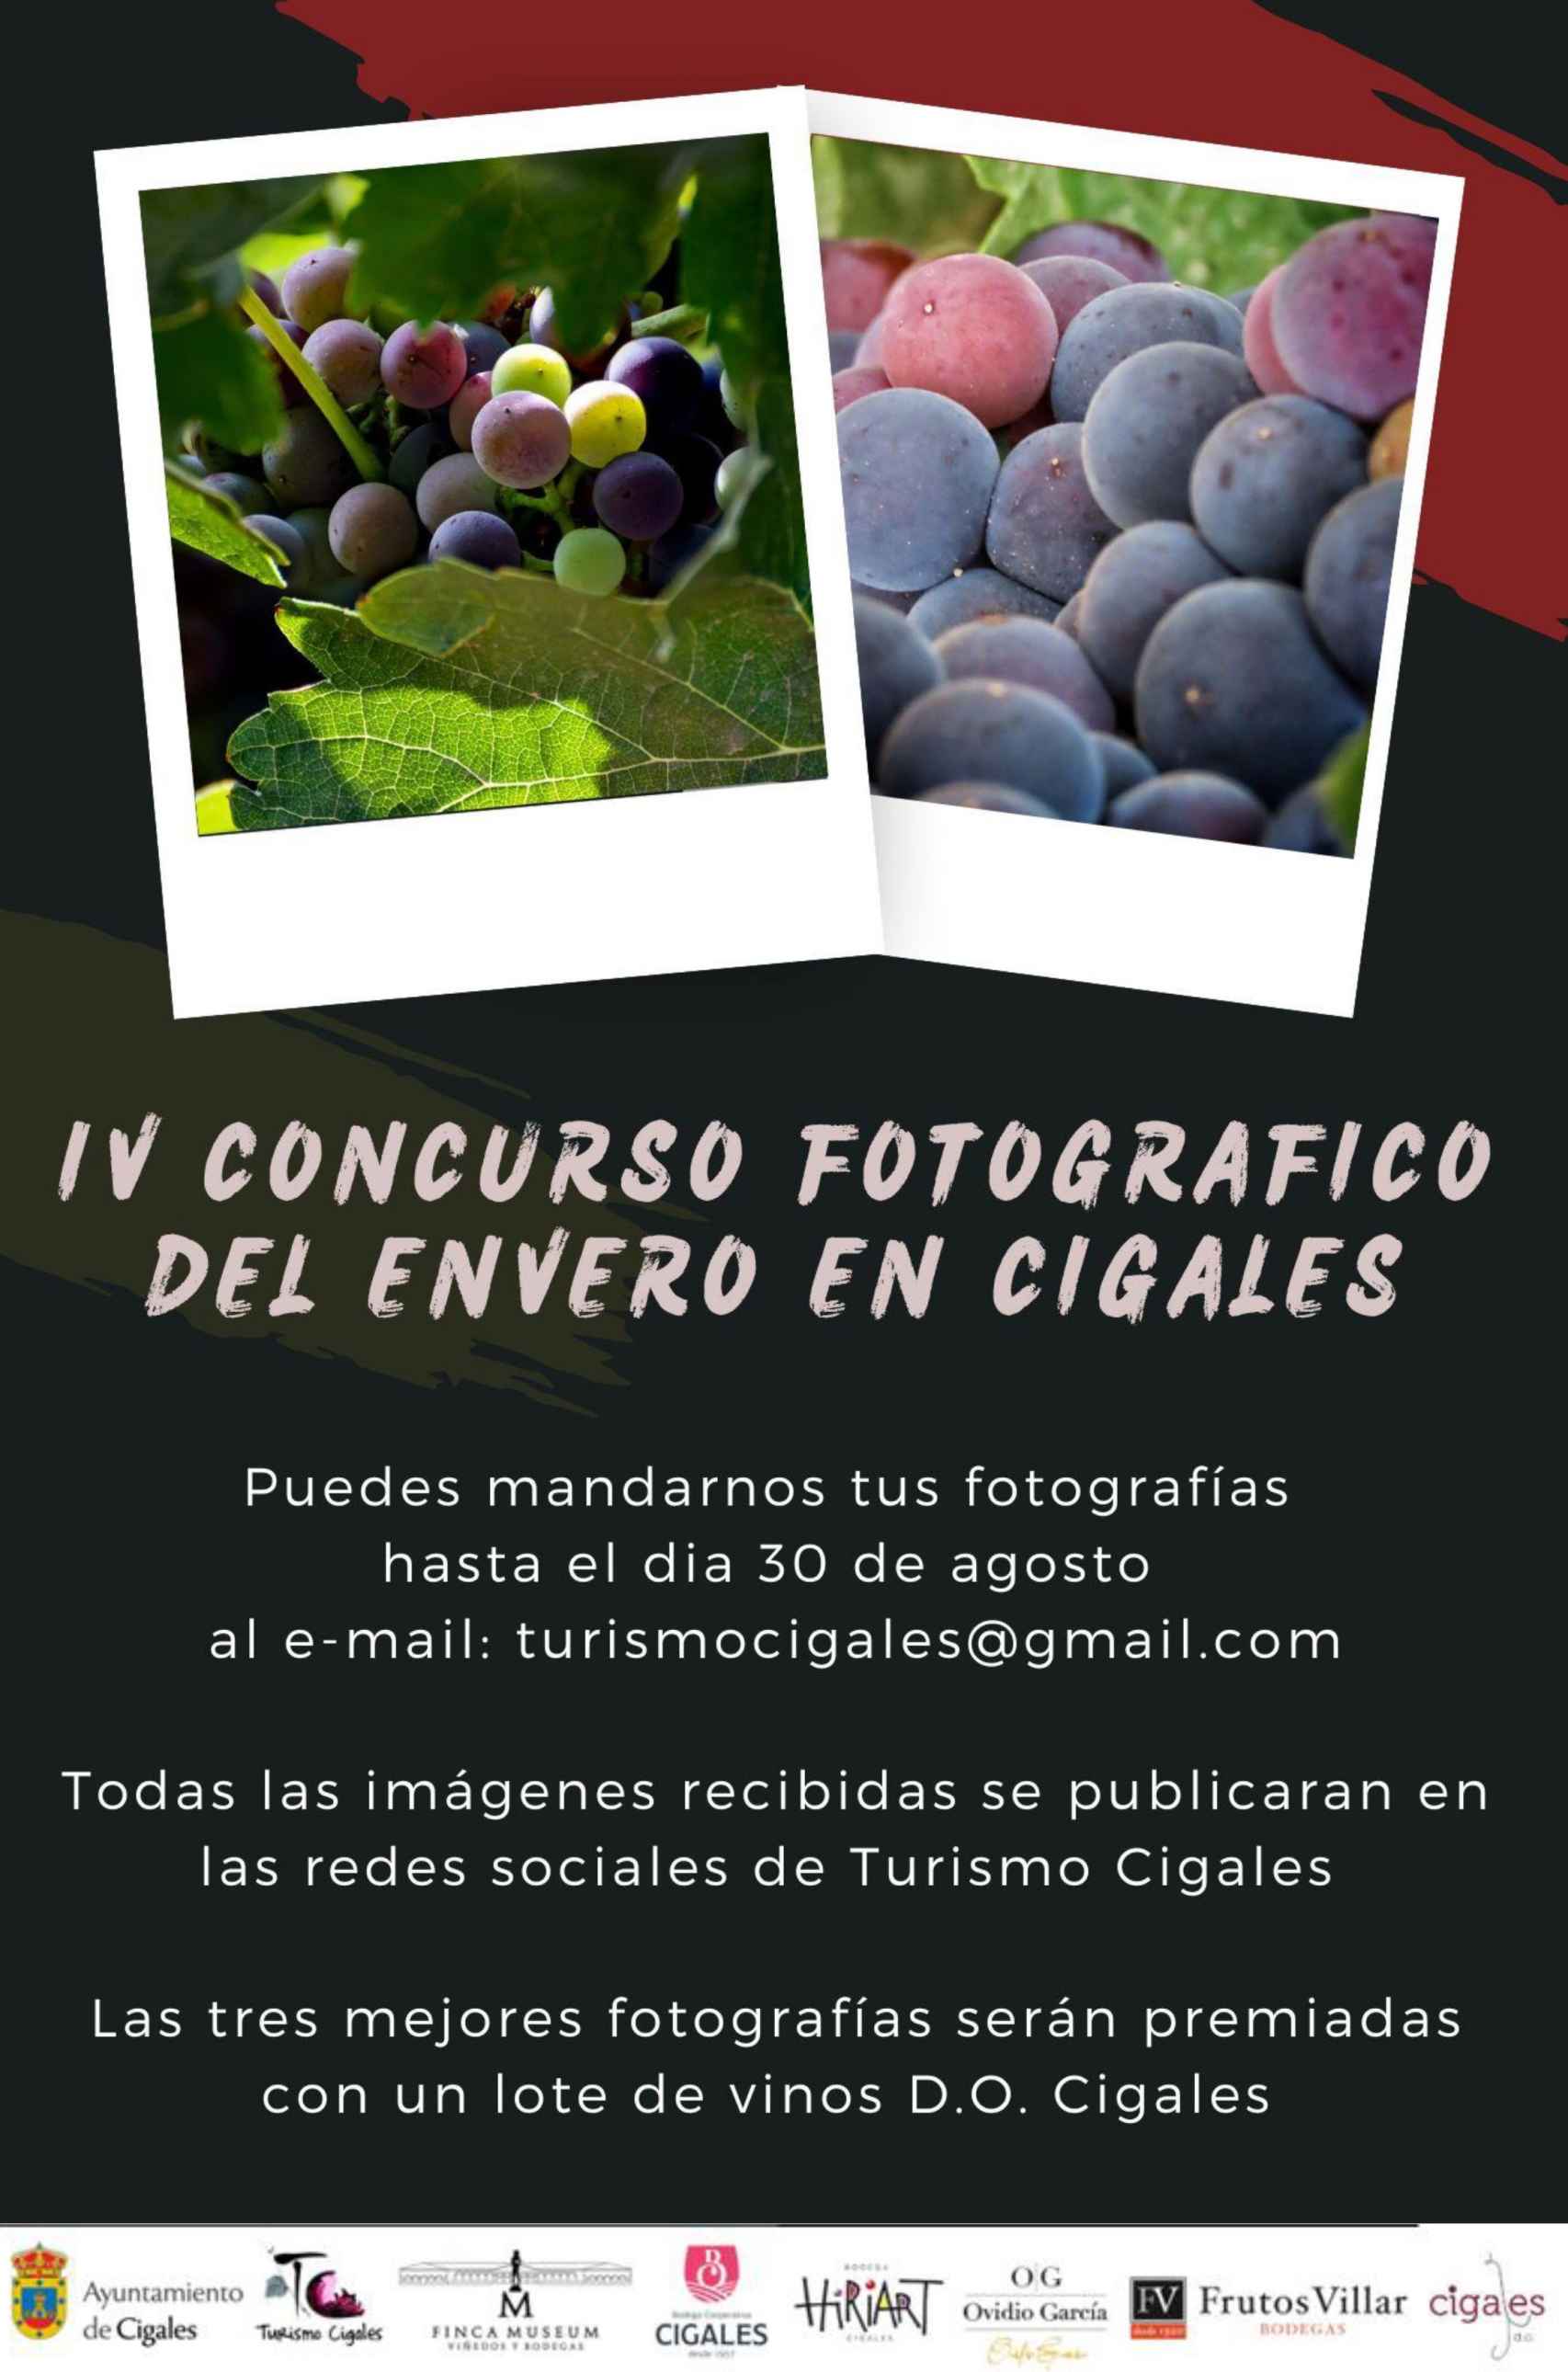 IV Concurso fotografía digital del envero en Cigales